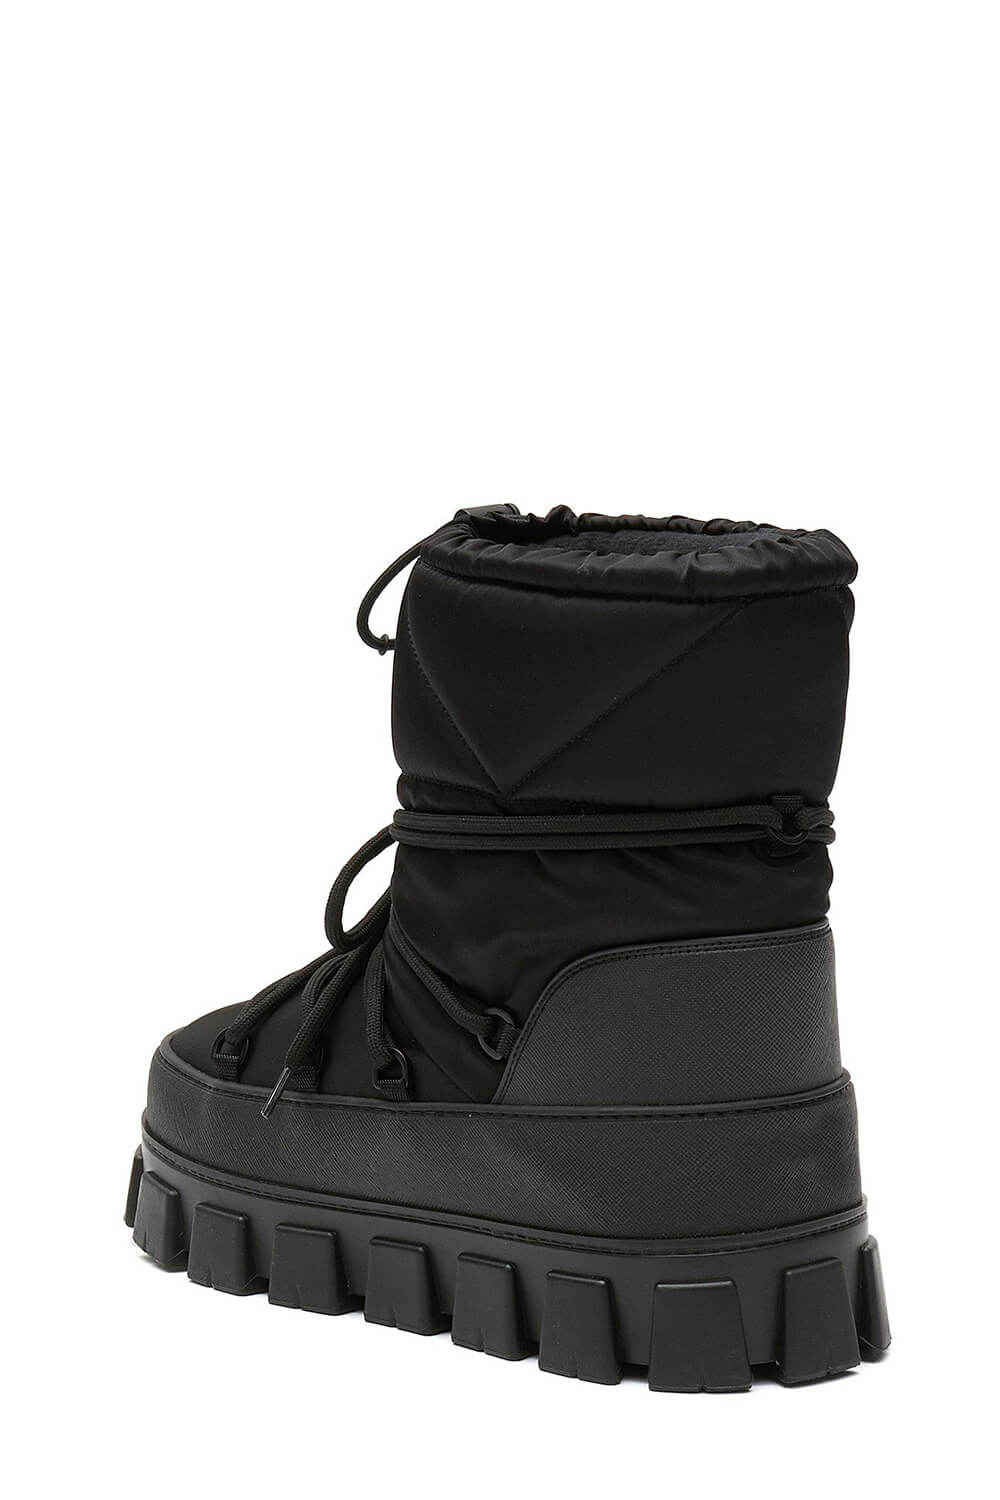 Lace Up Platform Ssnow Boots - Black